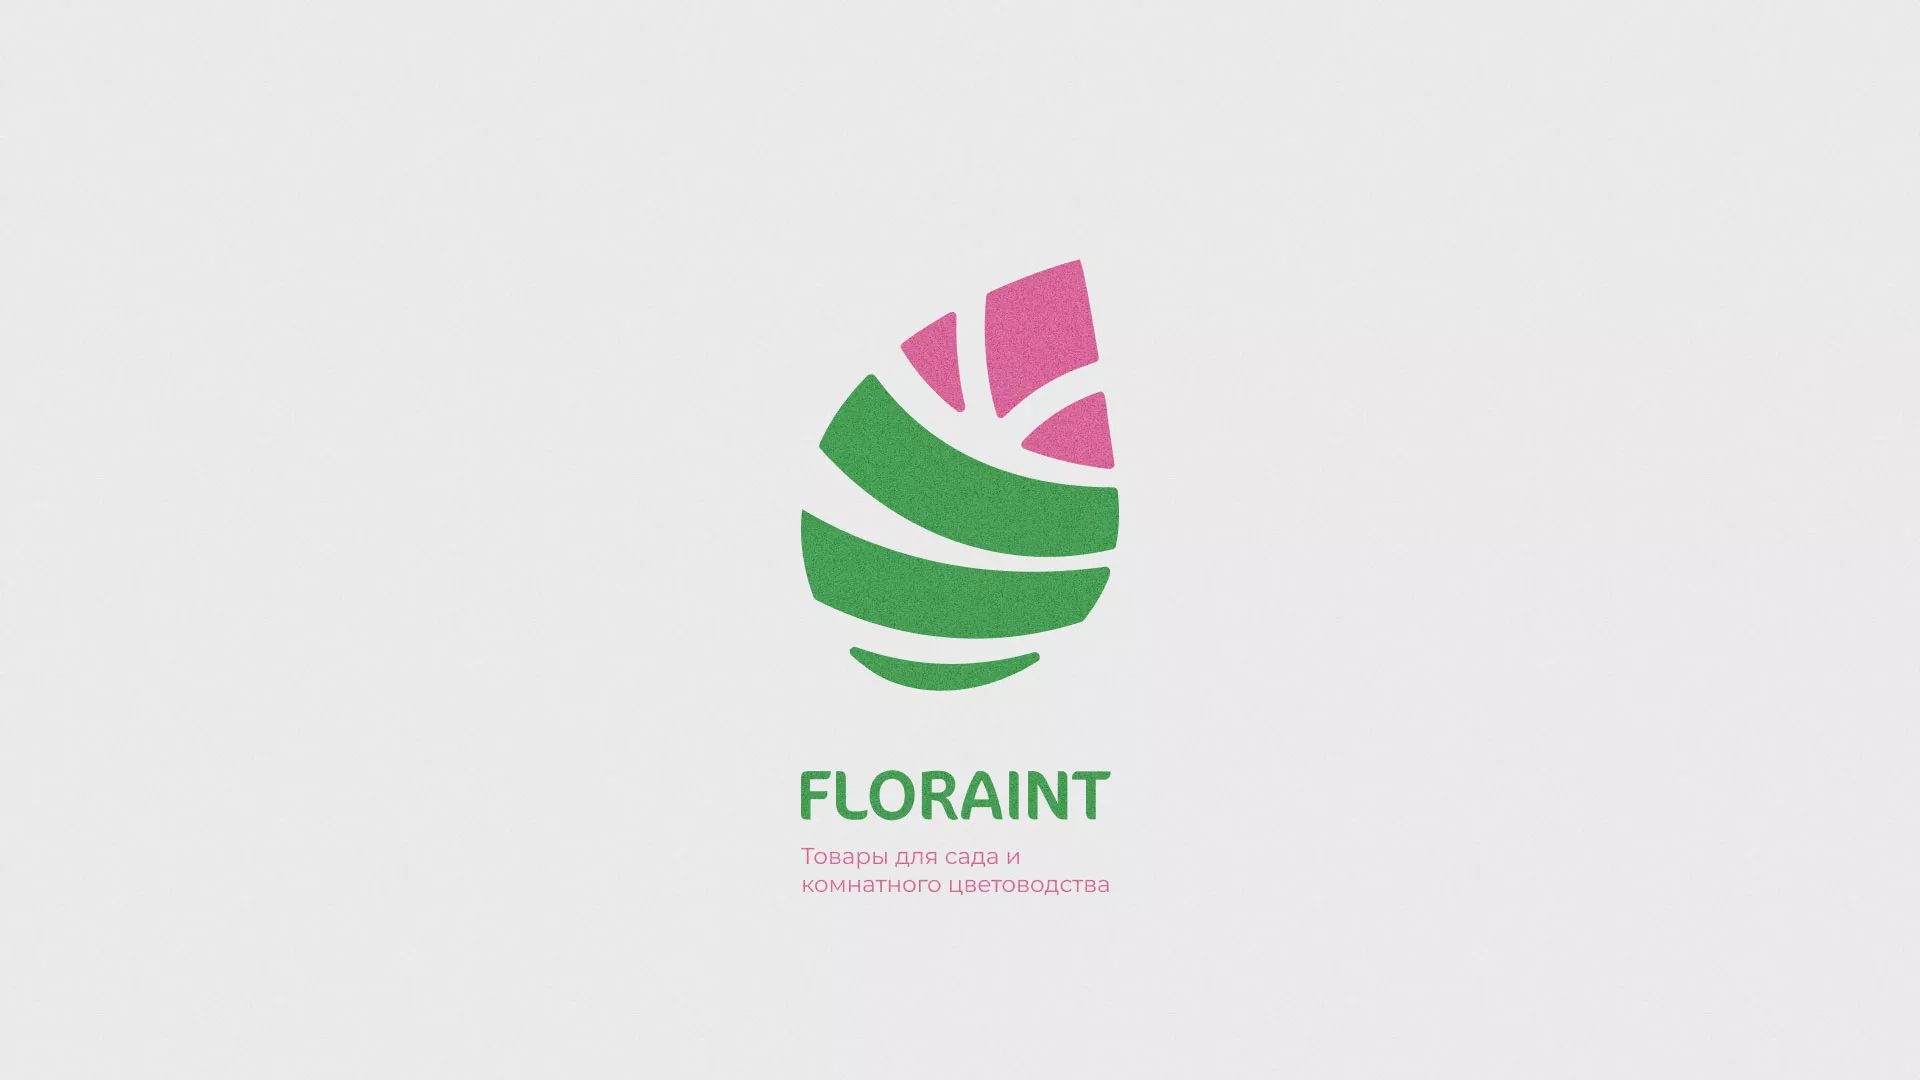 Разработка оформления профиля Instagram для магазина «Floraint» в Вязьме